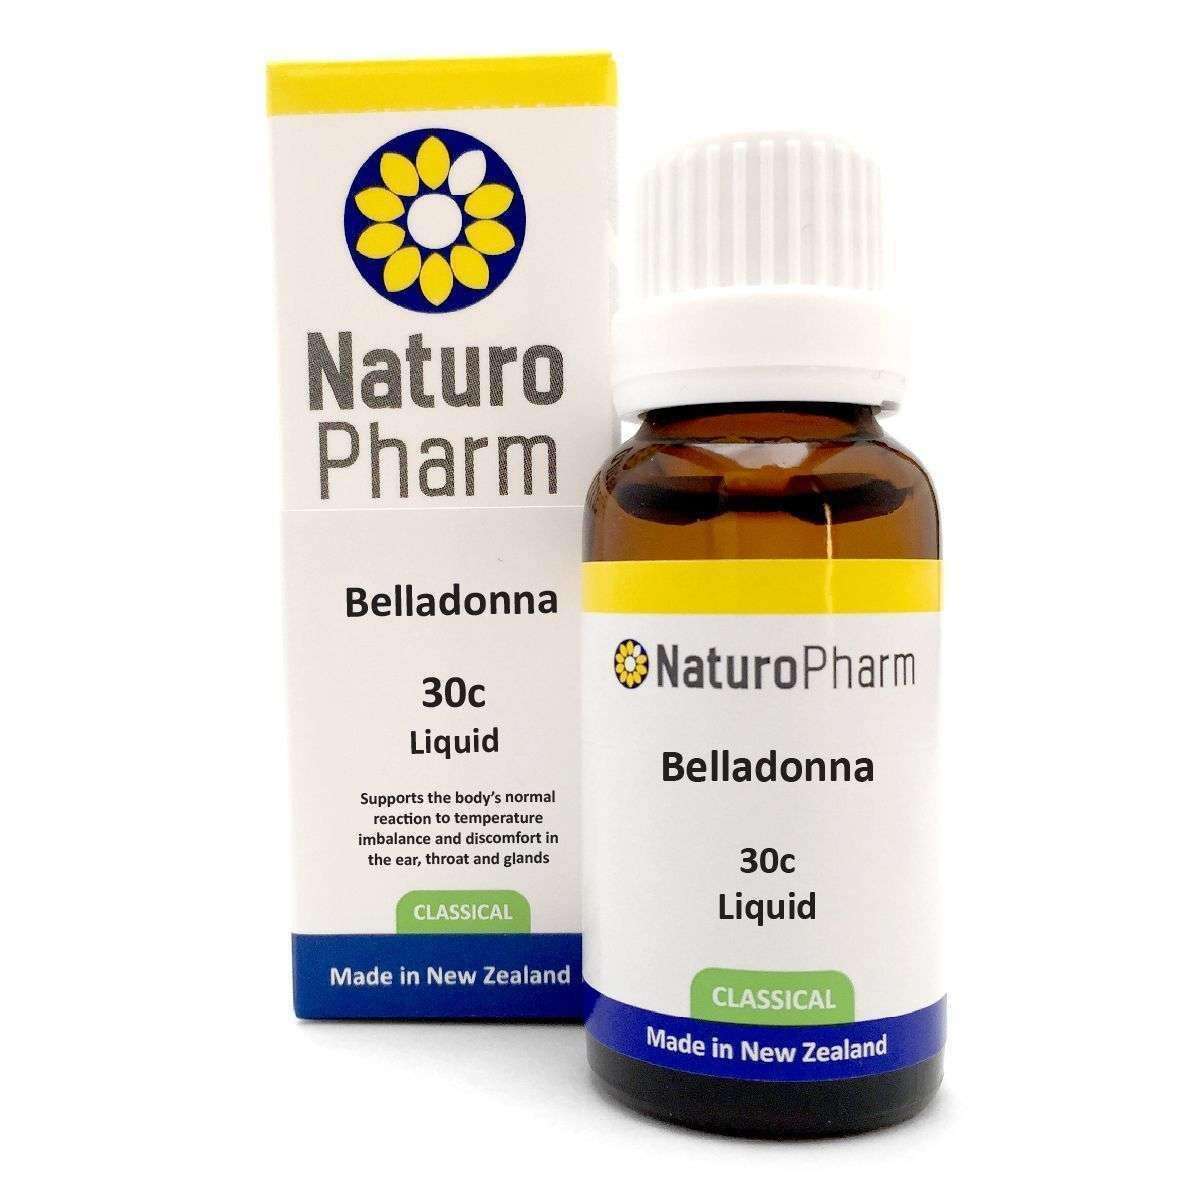 Naturo Pharm Belladonna 30c